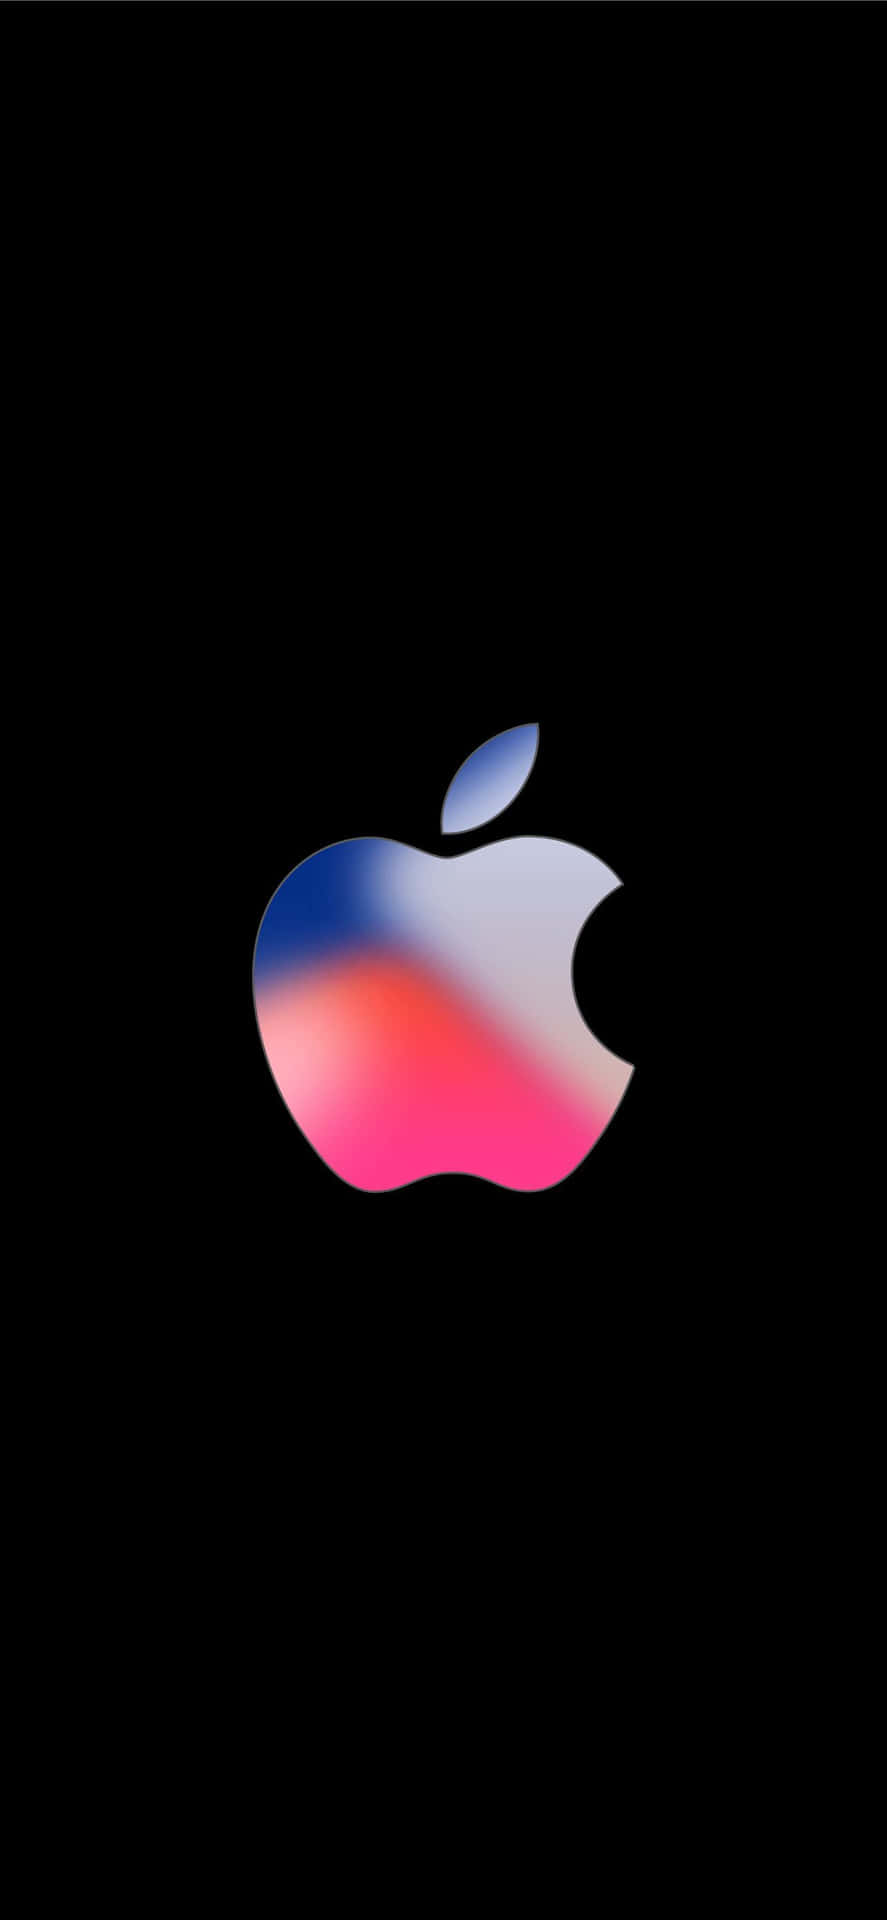 Logotipoazul Y Rosa Increíble De Apple Hd Para Iphone. Fondo de pantalla